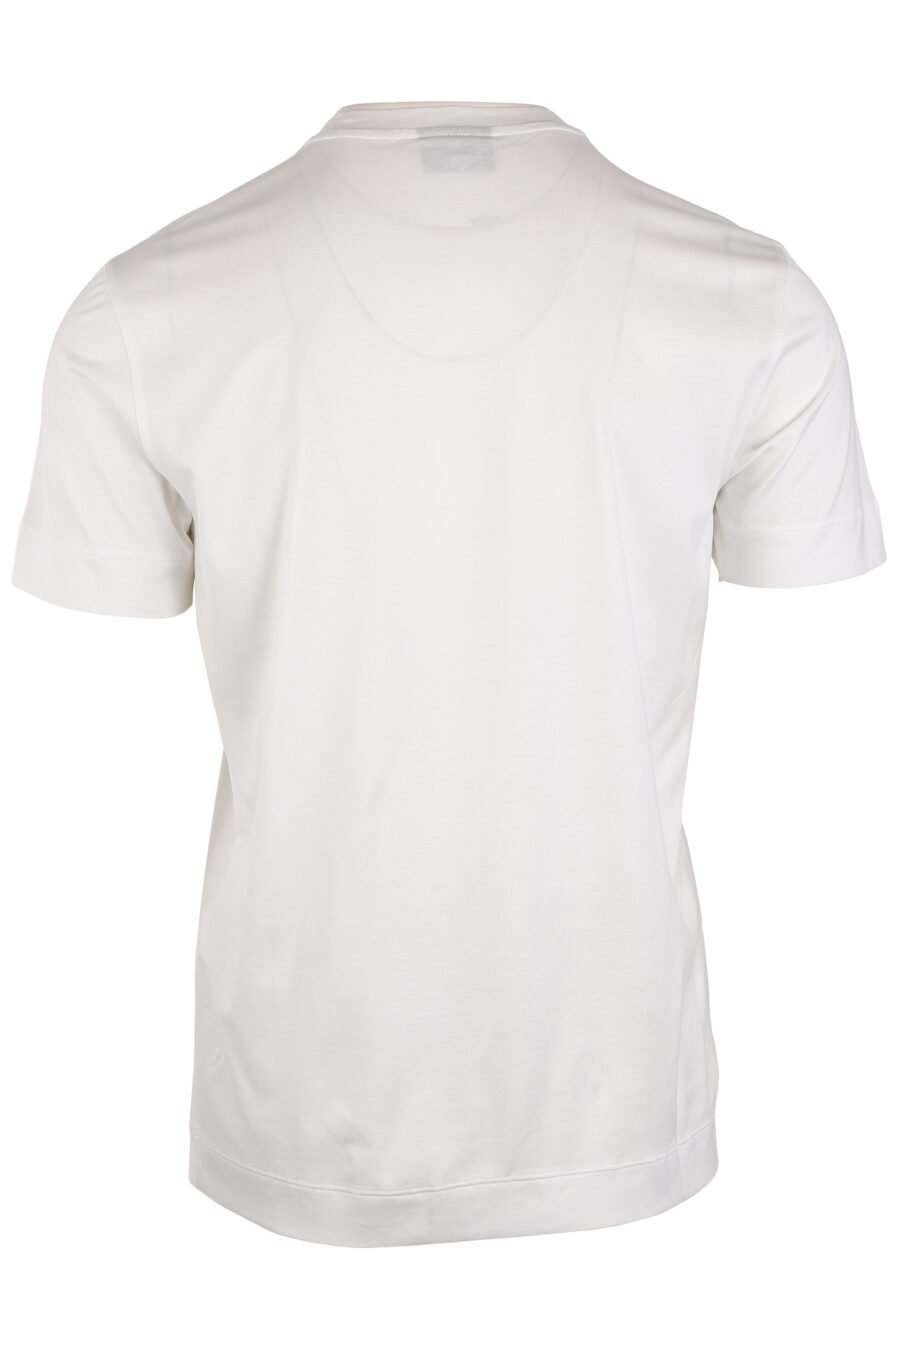 T-shirt branca com mini-logotipo da águia em degradé azul - IMG 4055